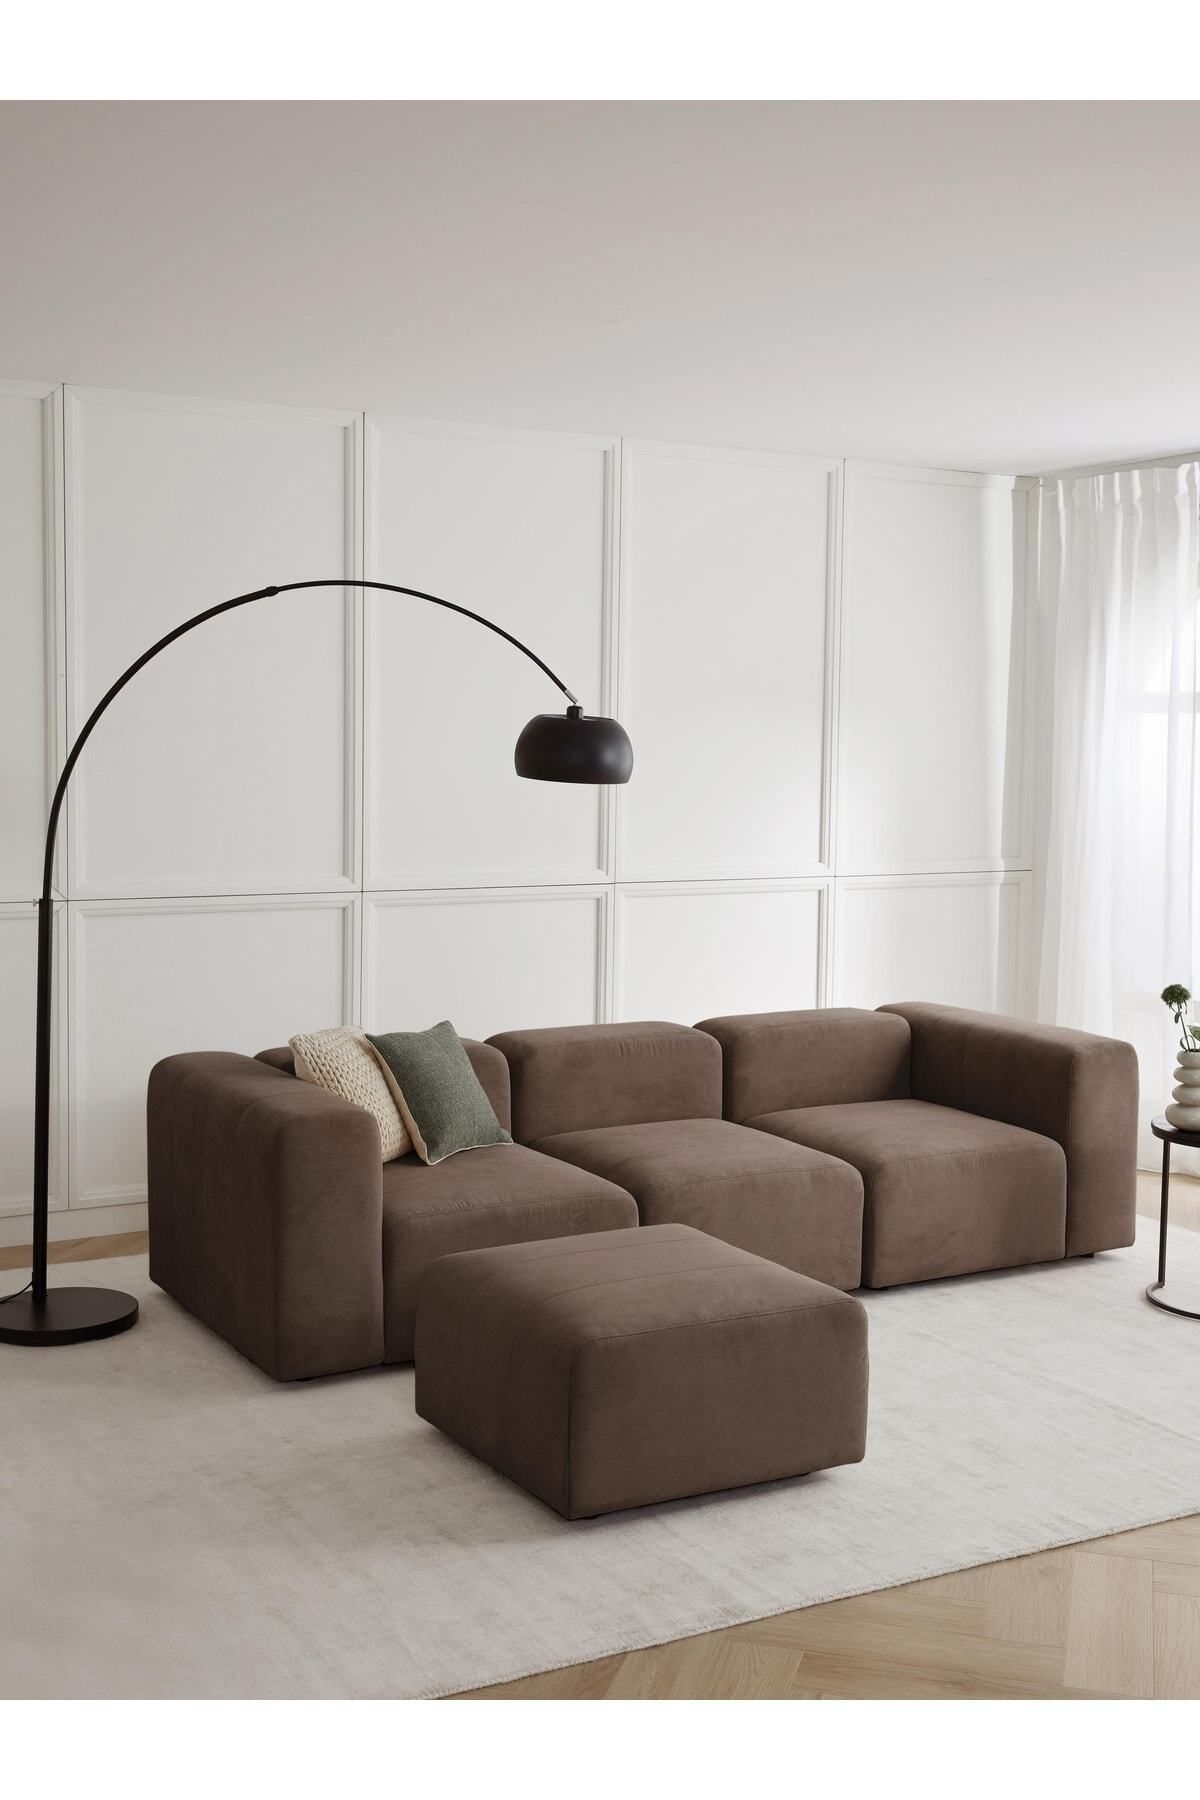 S Home Design Concept Pietro 4 Modül Modüler Kanepe Köşe Koltuk Takımı, Yönsüz Kadife, Kahverengi